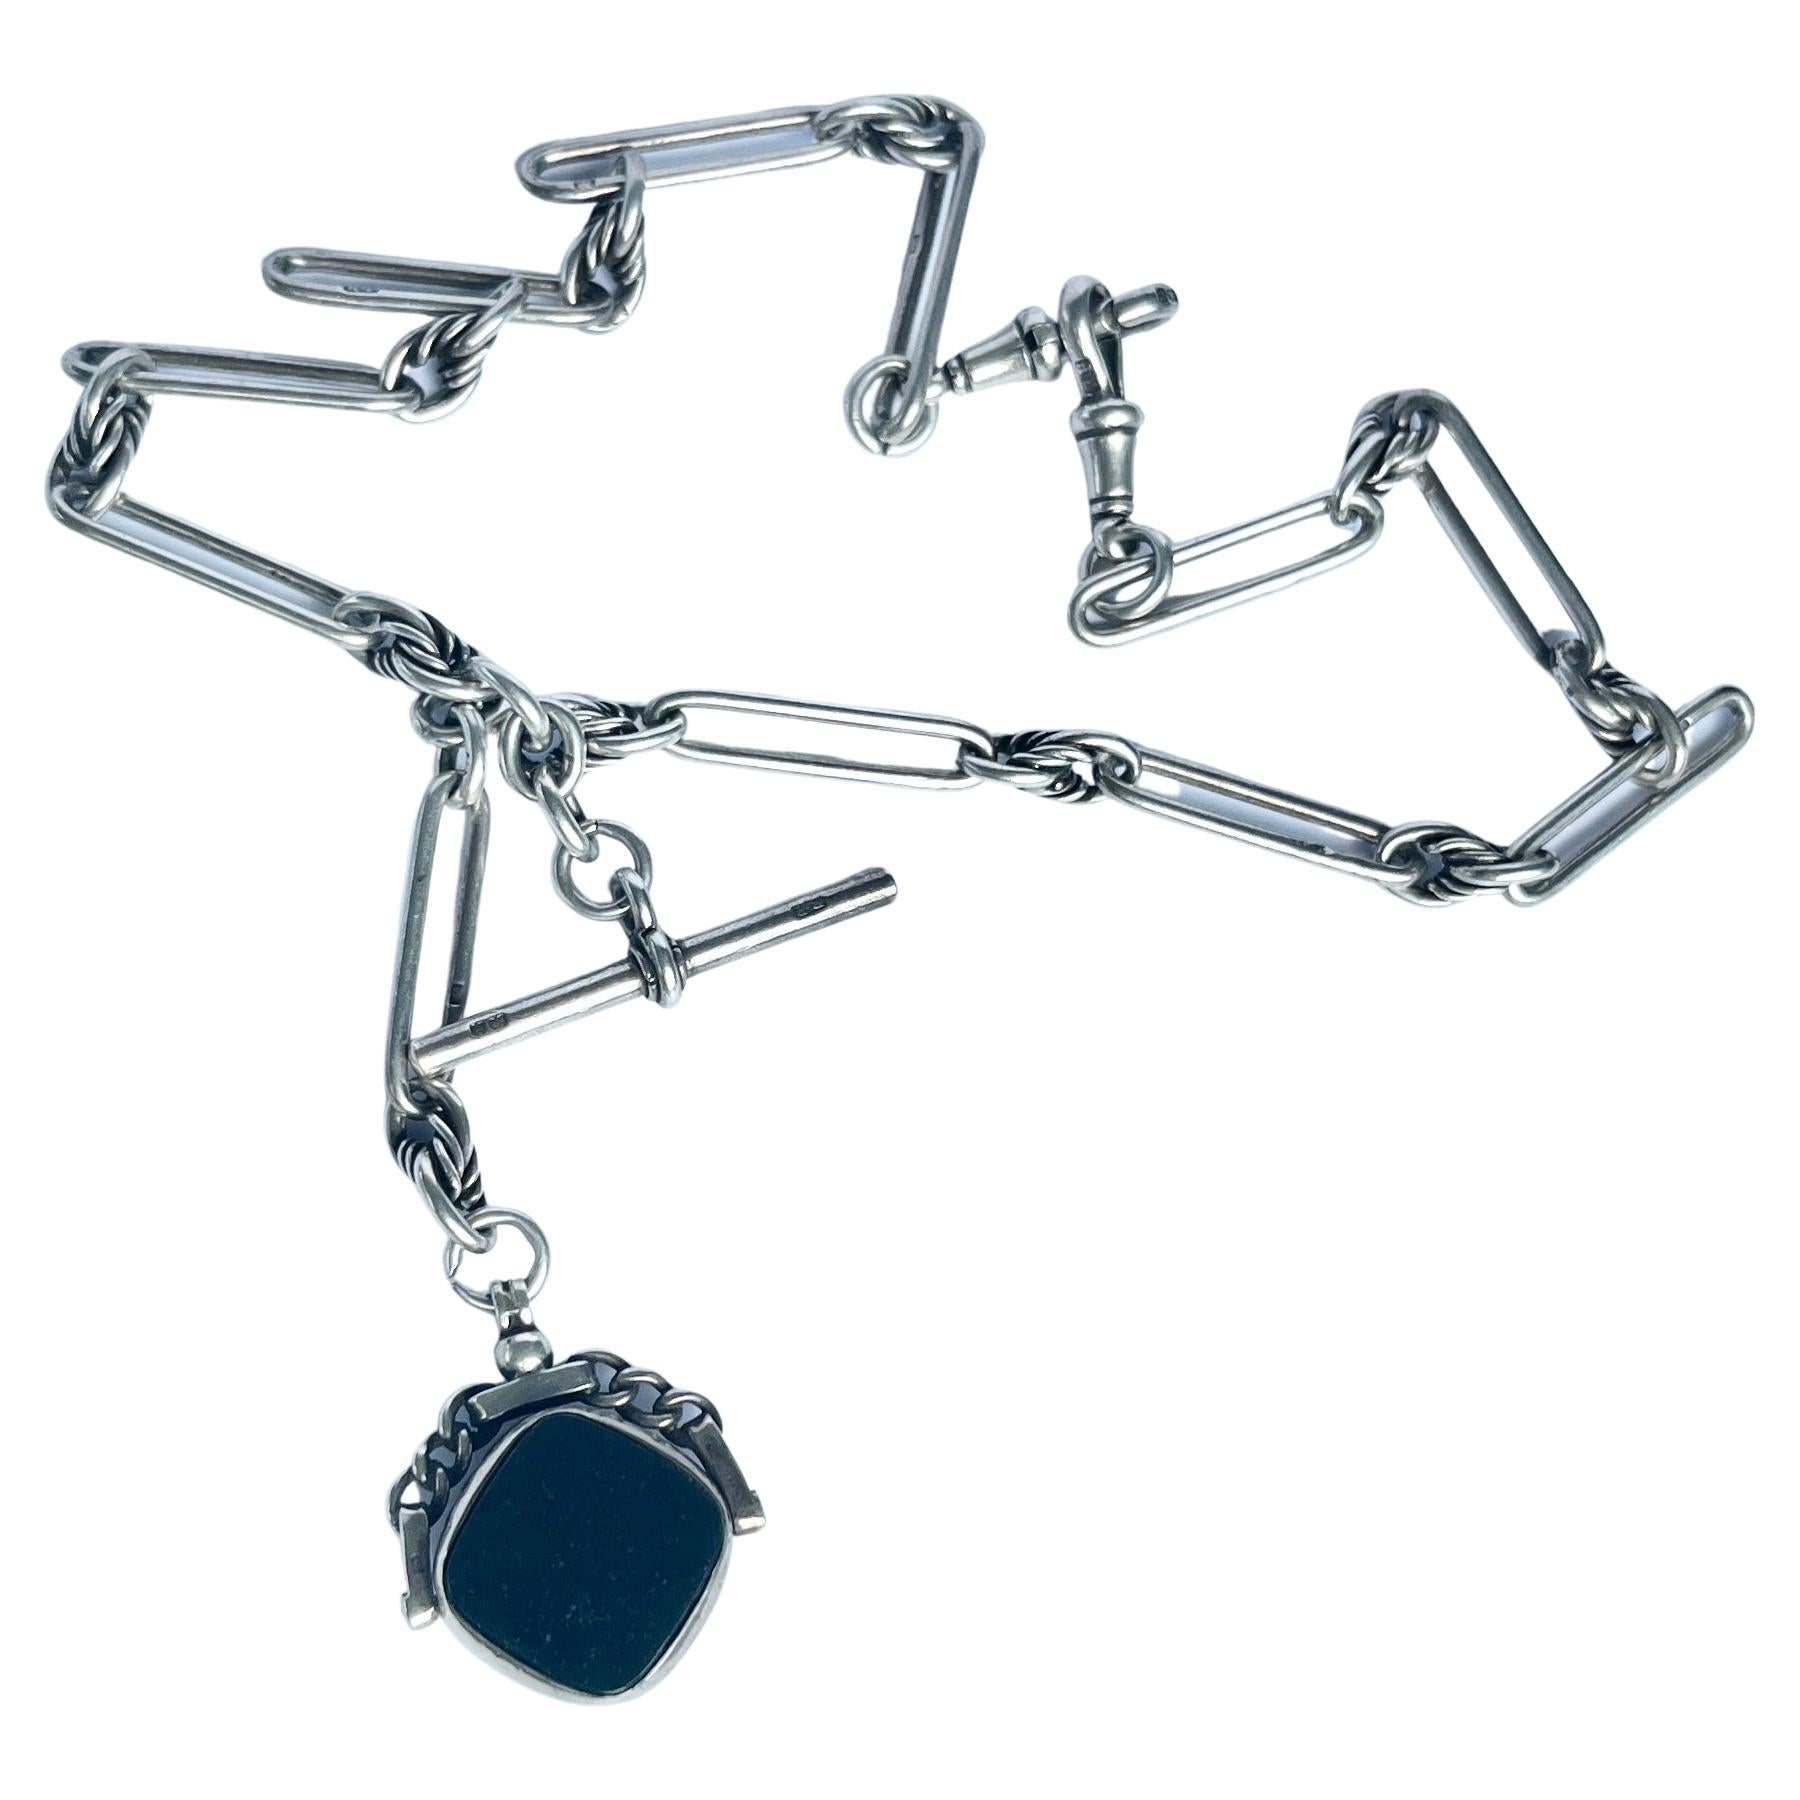 Albert- oder Halskette aus edwardianischem Silber mit T-Bar und Knopfleiste